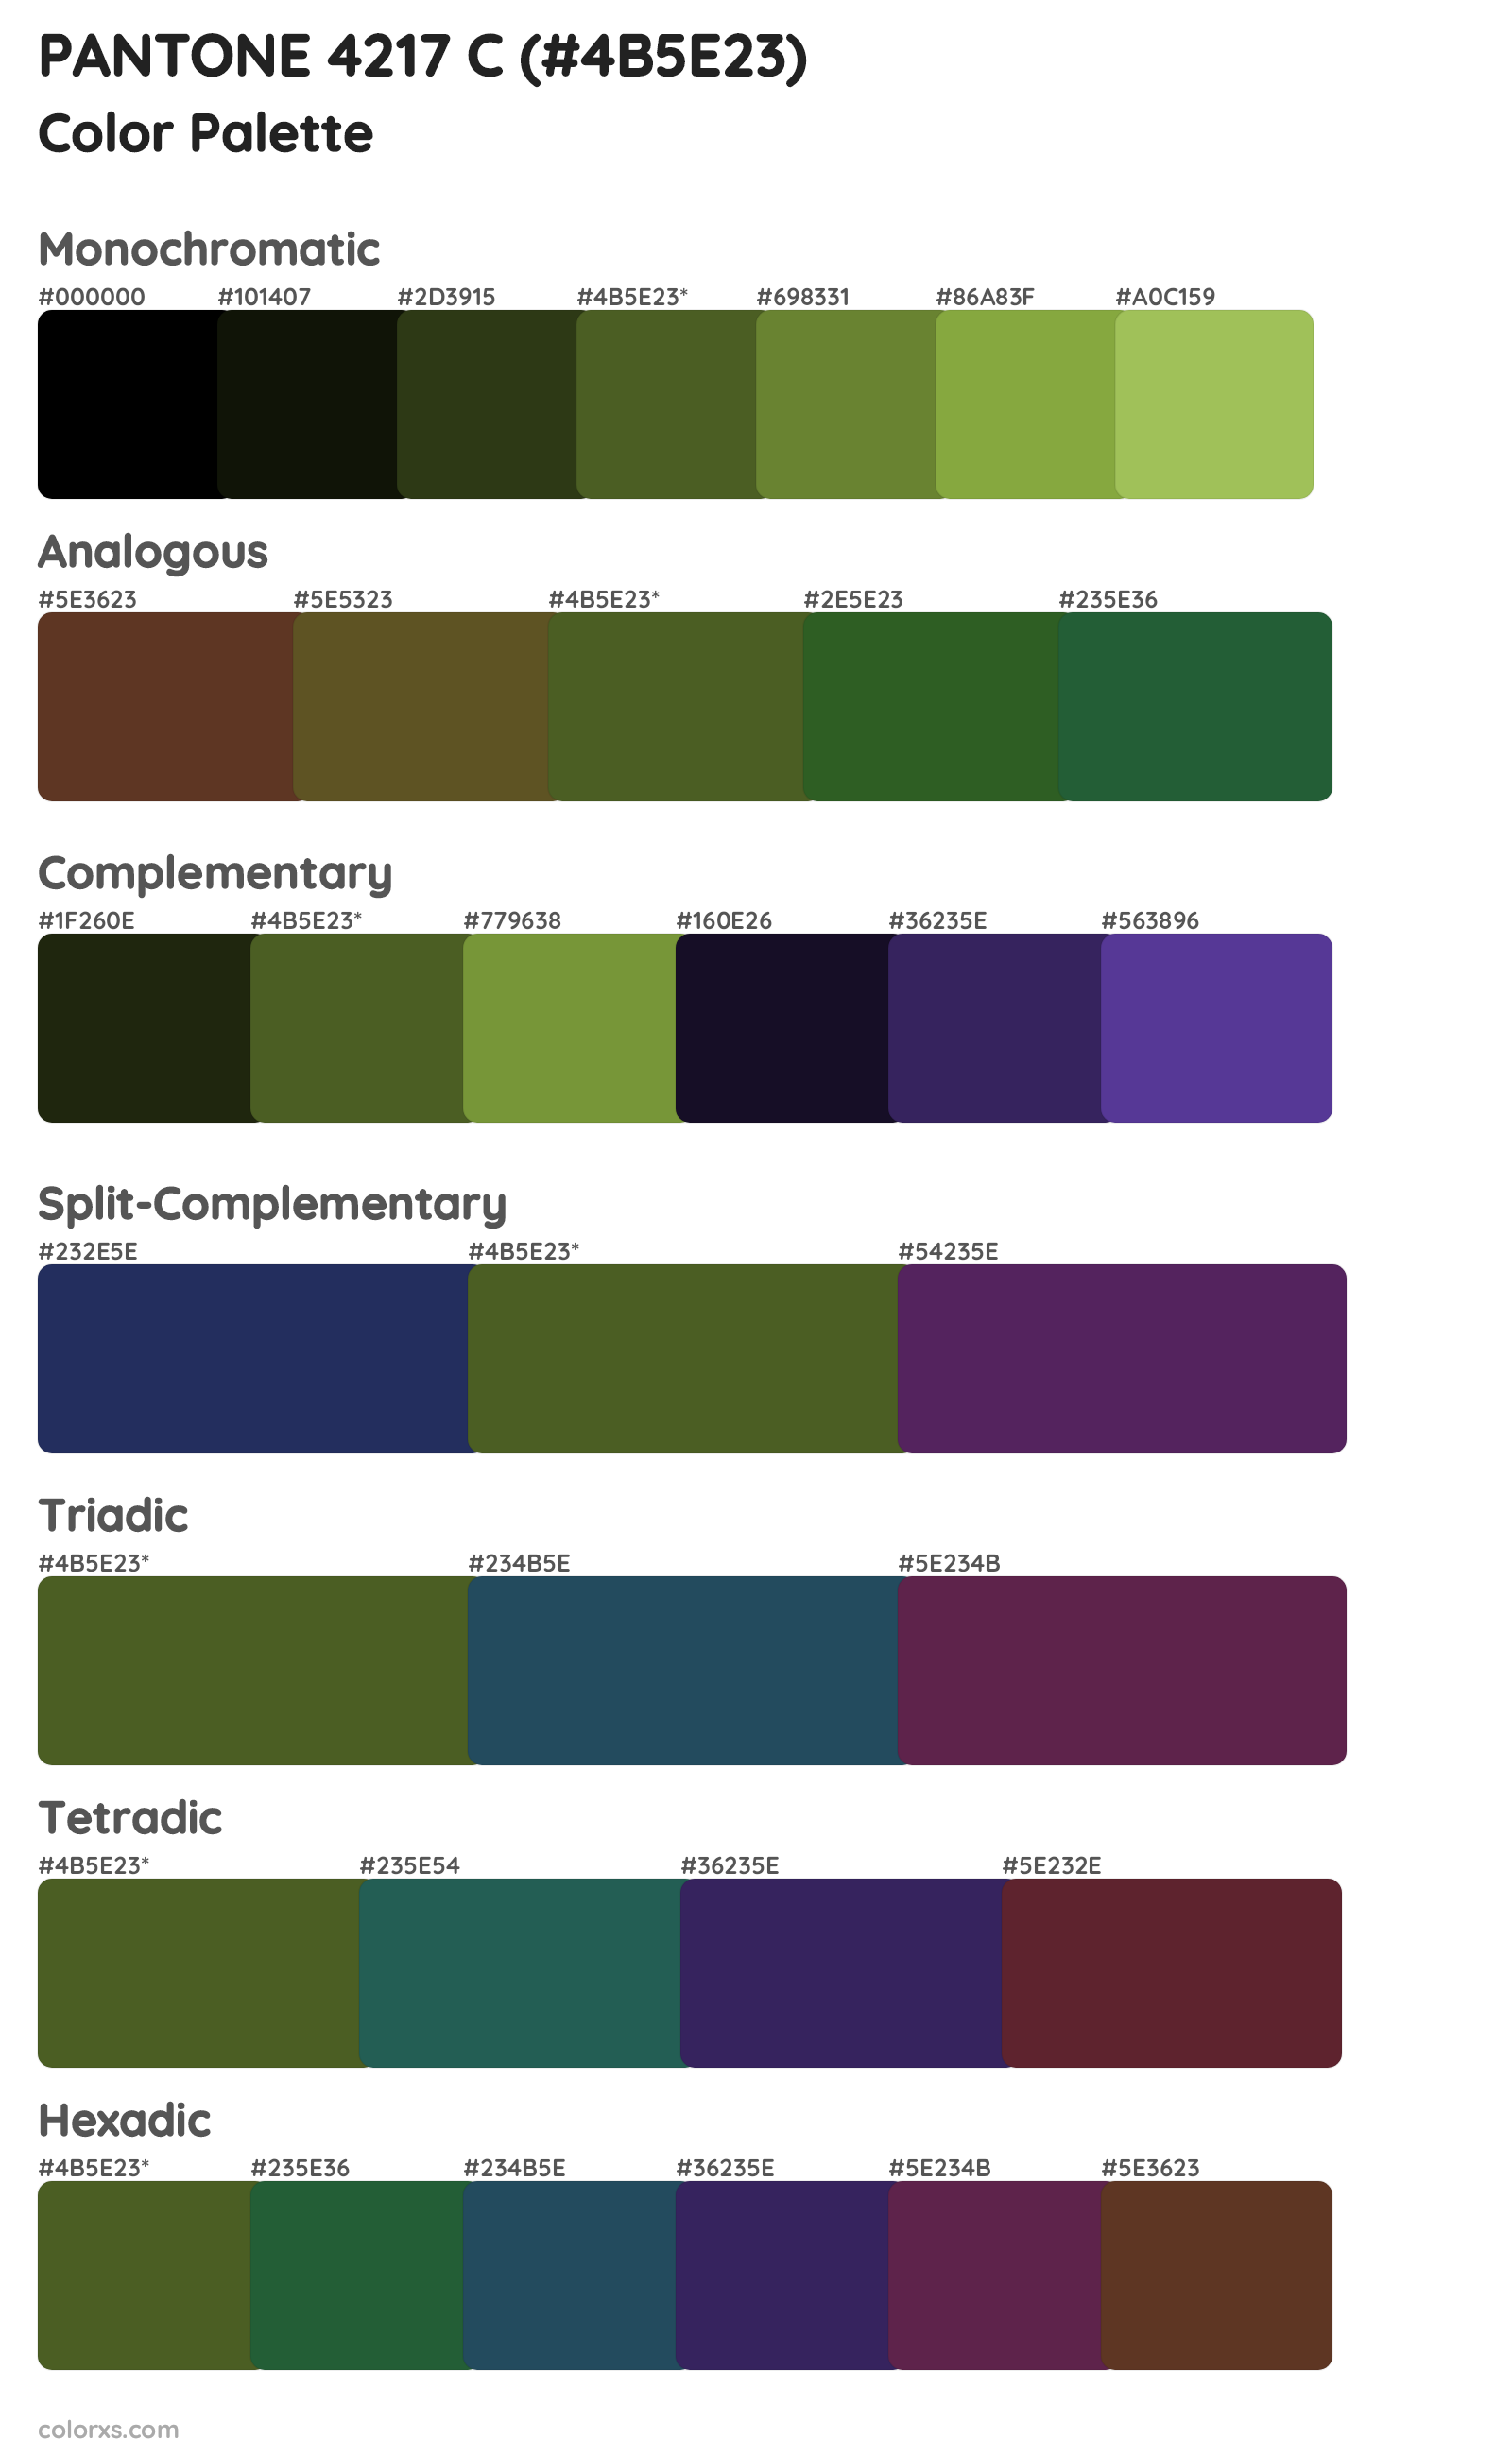 PANTONE 4217 C Color Scheme Palettes